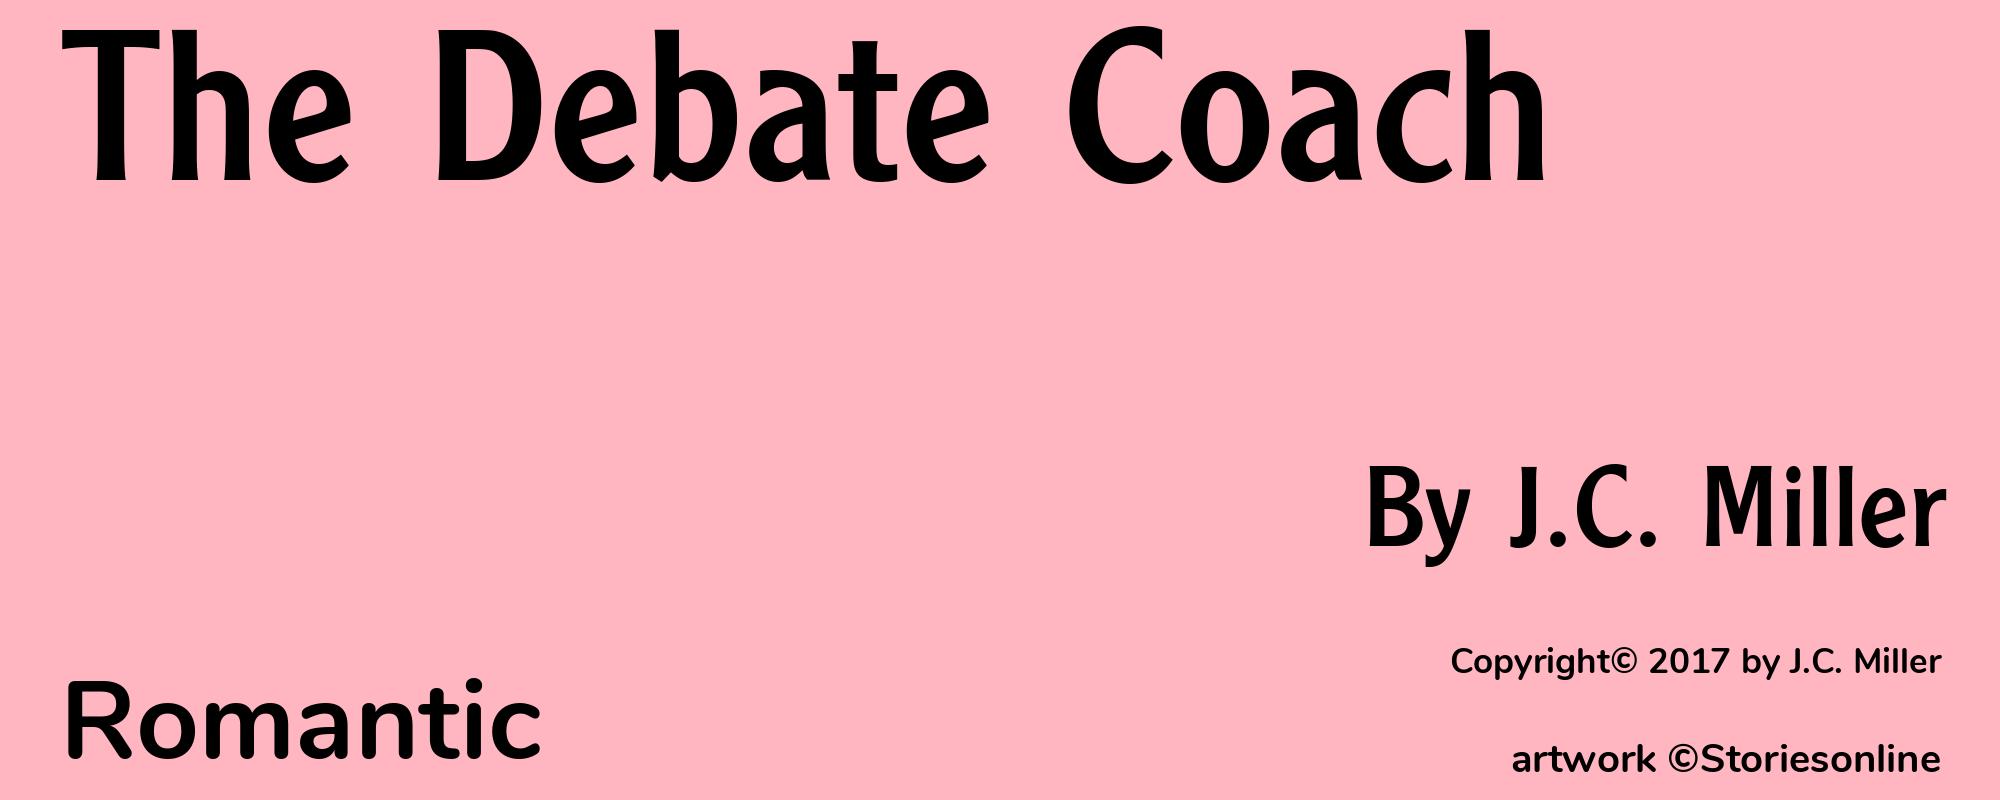 The Debate Coach - Cover